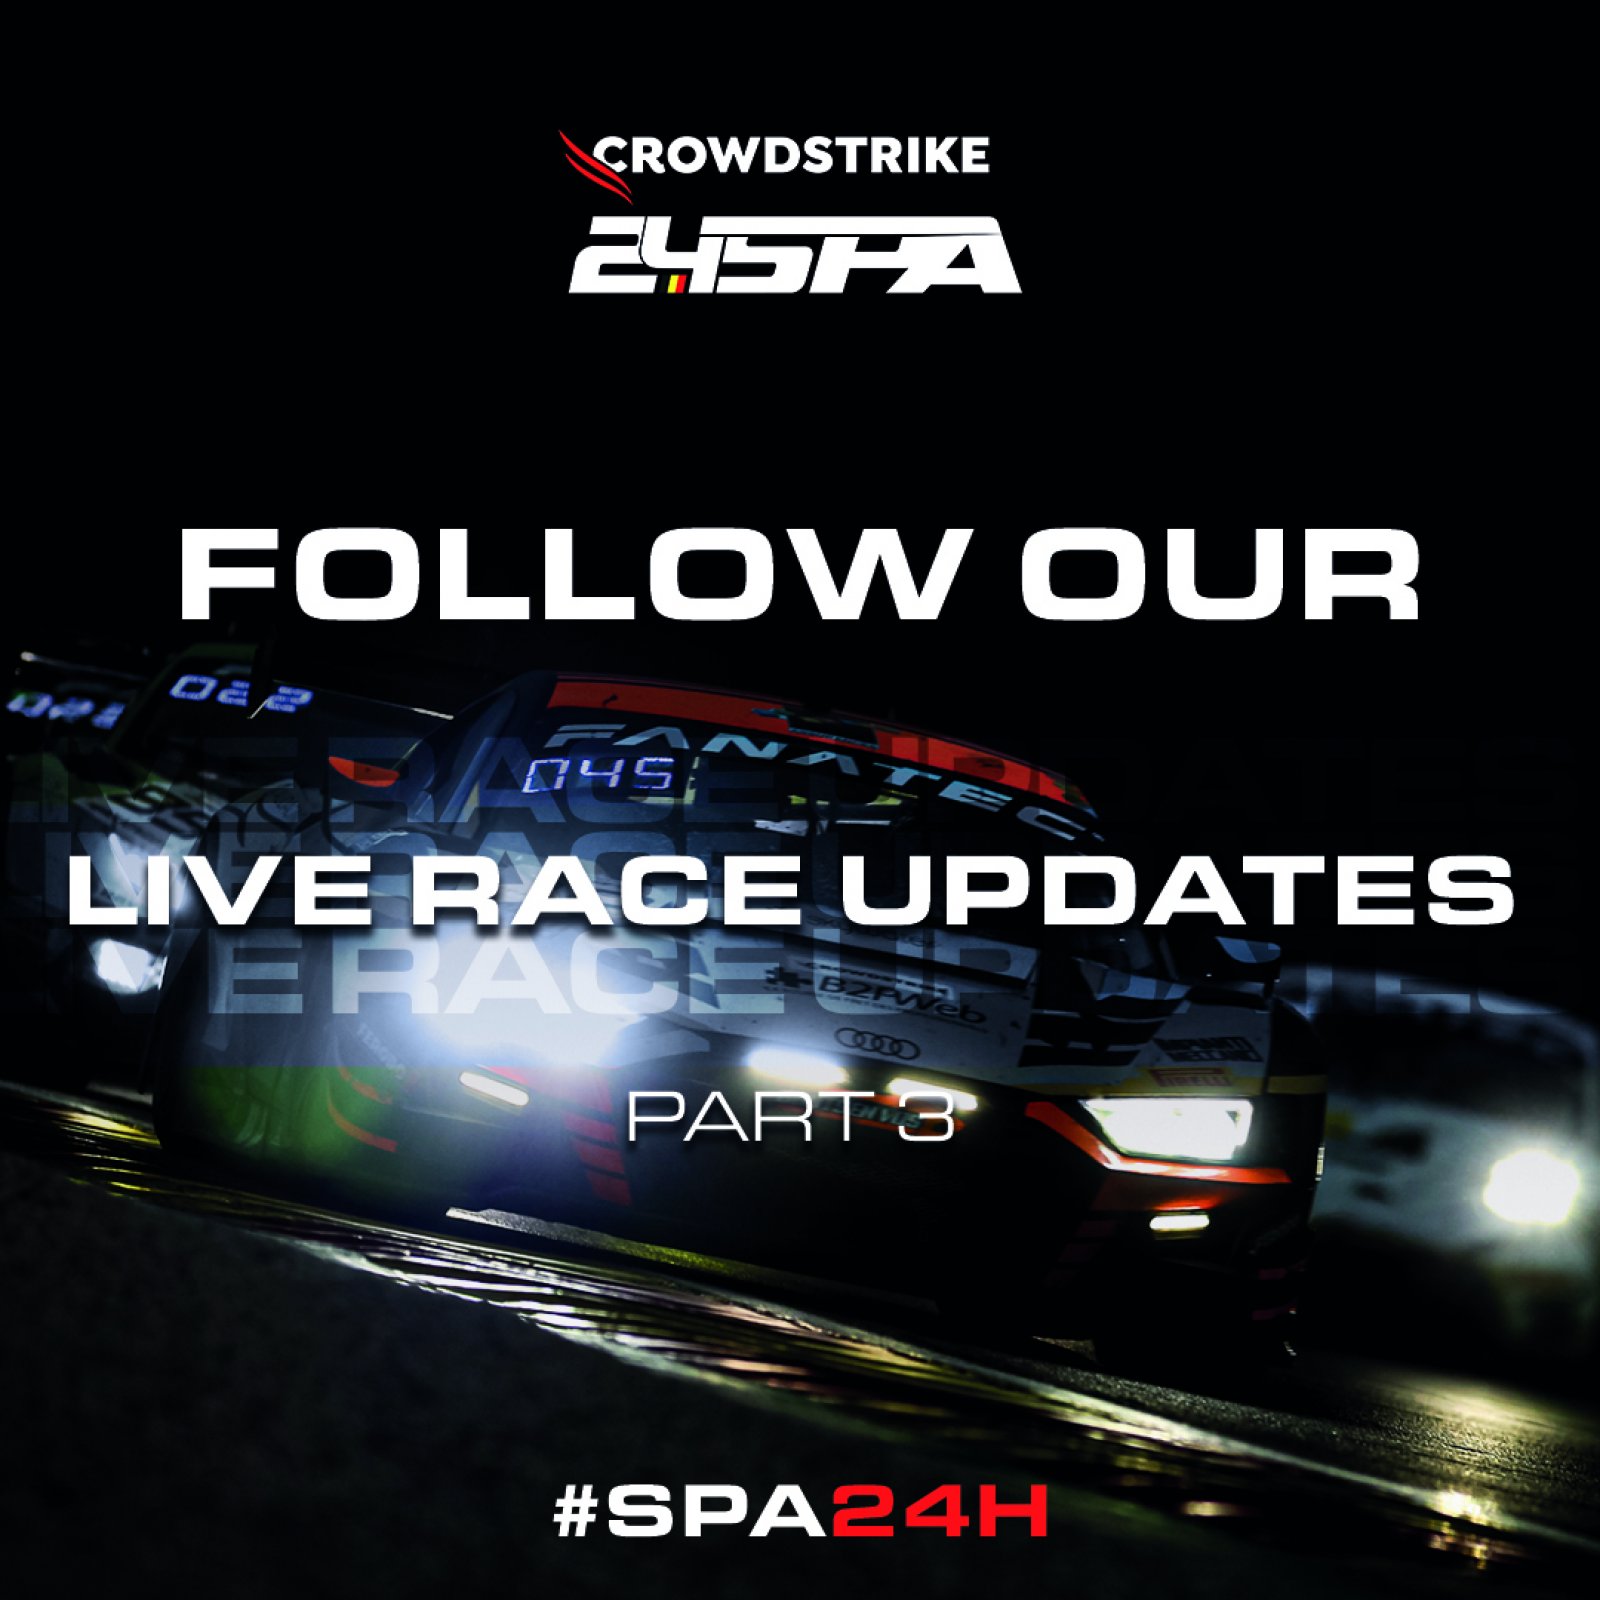 #Spa24h Race Updates – Part 3